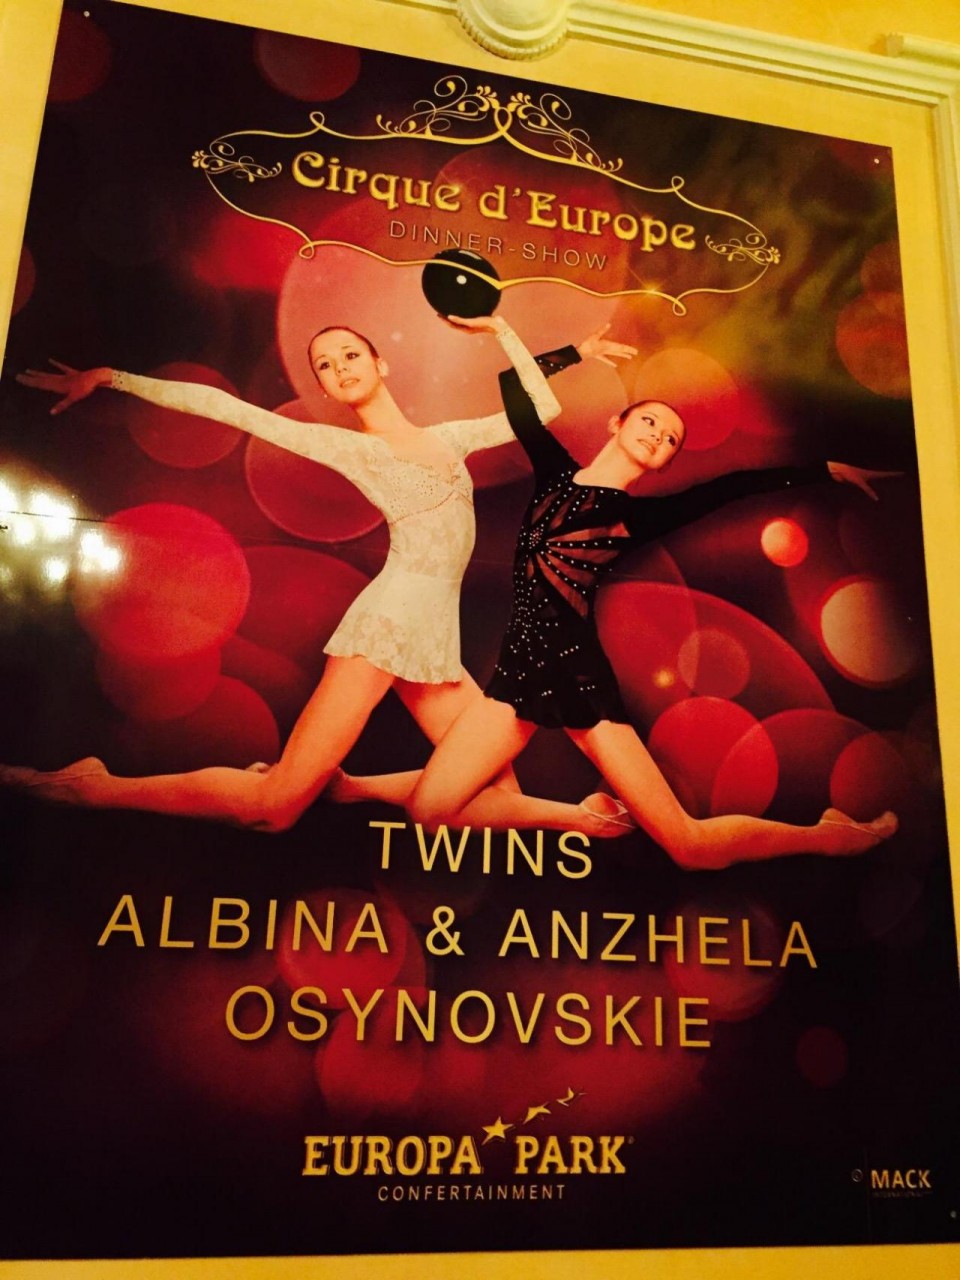 Стоимость получасового приватного танца Анжелы и Альбины 300 тысяч рублей. 